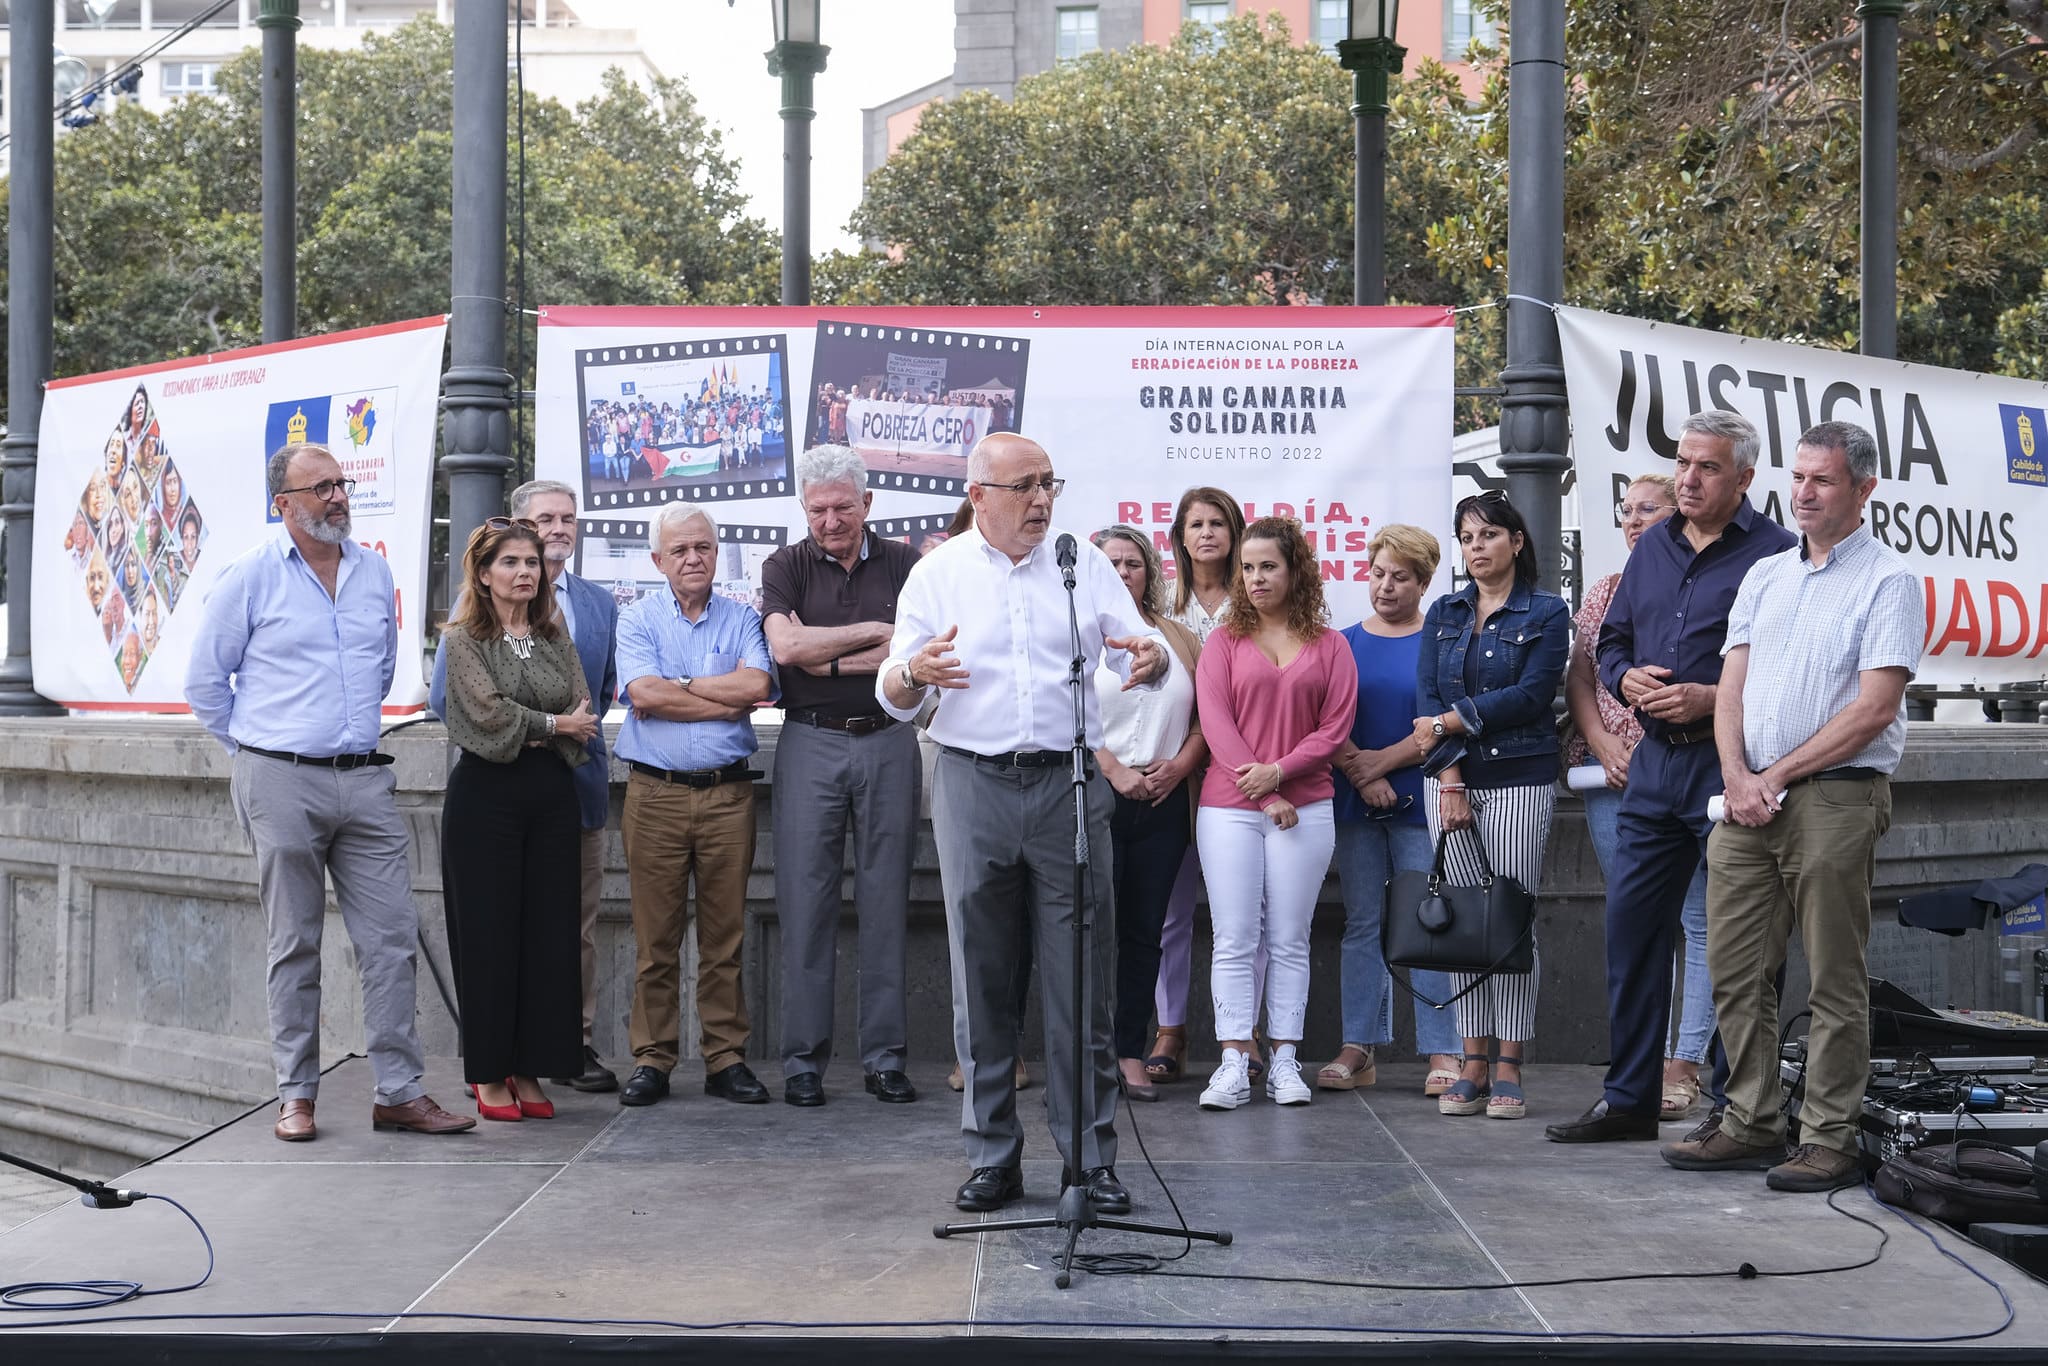 ‘Rebeldía, compromiso y esperanza’ abanderan la celebración del Encuentro Gran Canaria Solidaria 2022 impulsado por el Cabildo